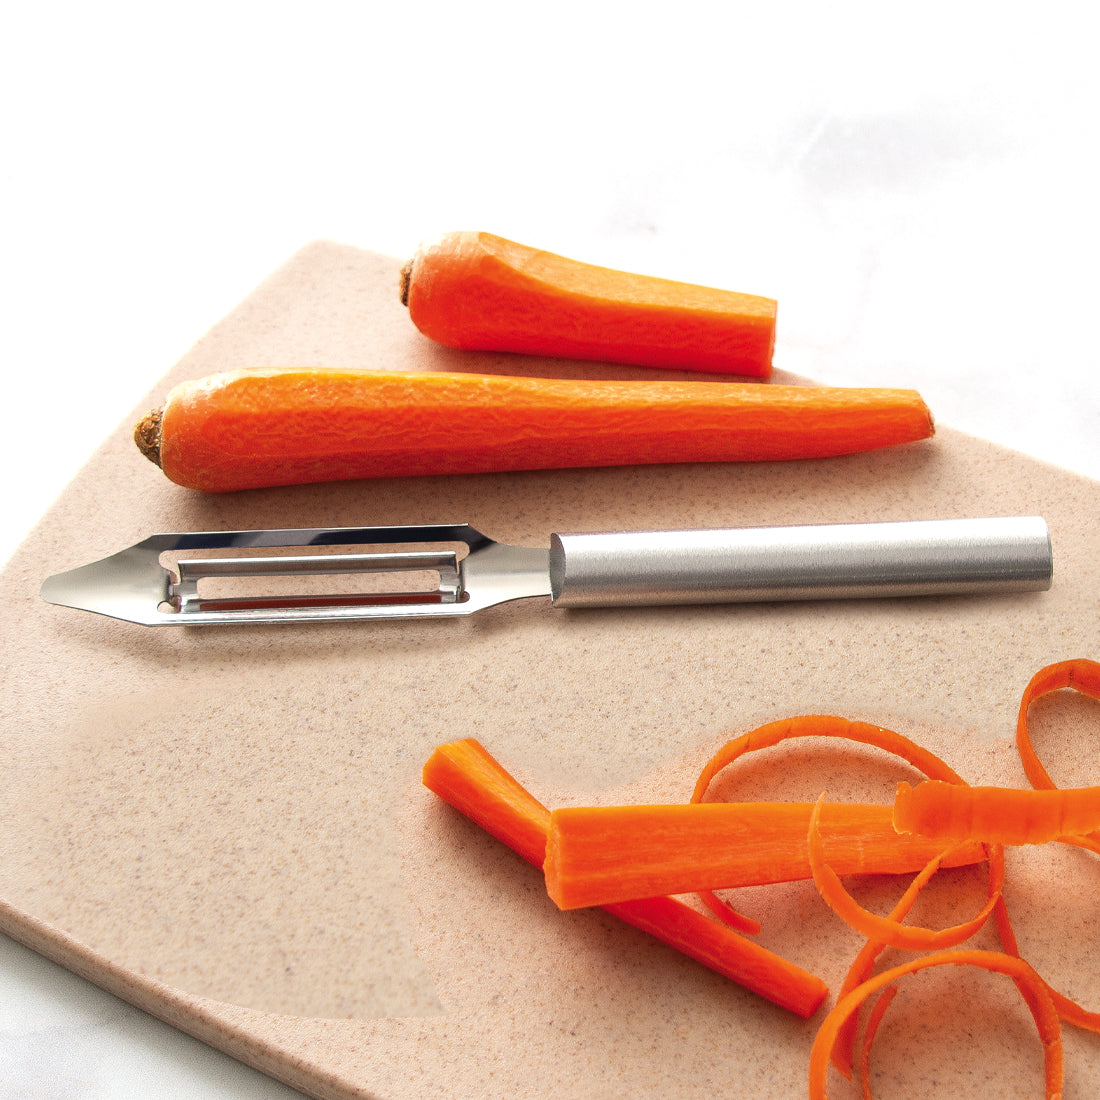 Industrial Vegetable Peeler - Vegetable Knife Peeler